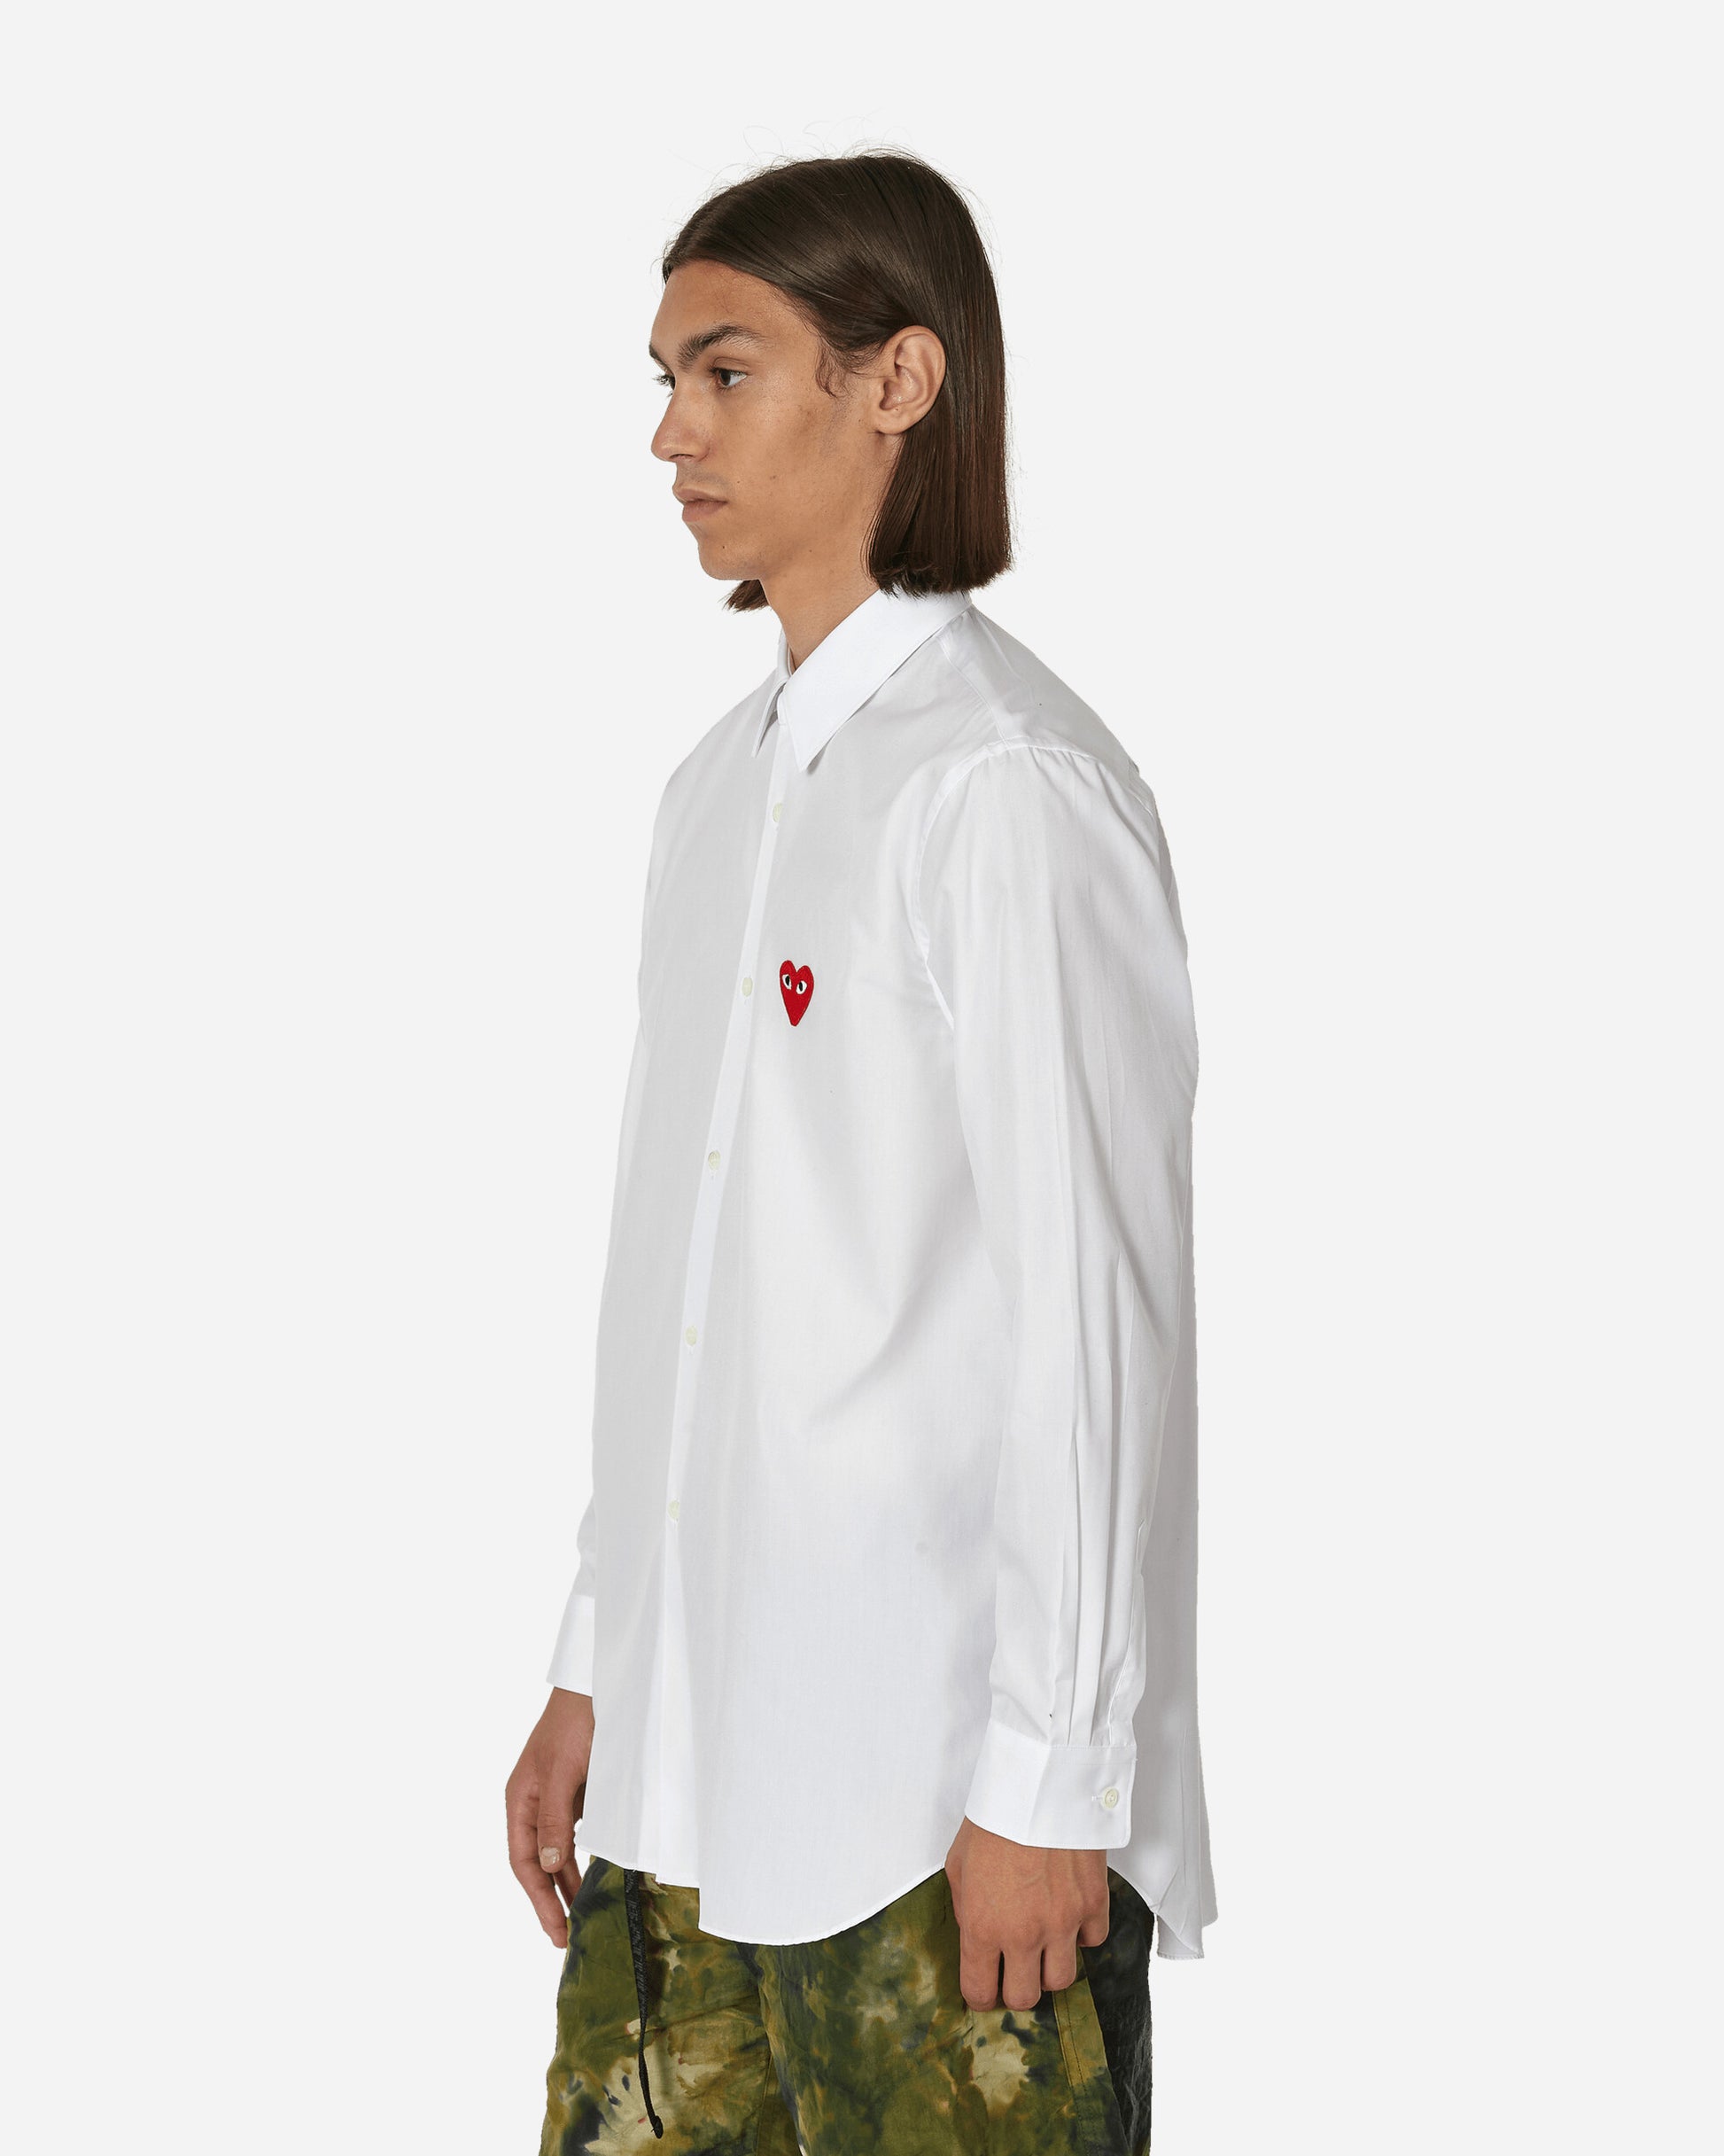 Comme Des Garçons Play Mens Shirt Woven Red Heart White Shirts Longsleeve Shirt P1B002  2